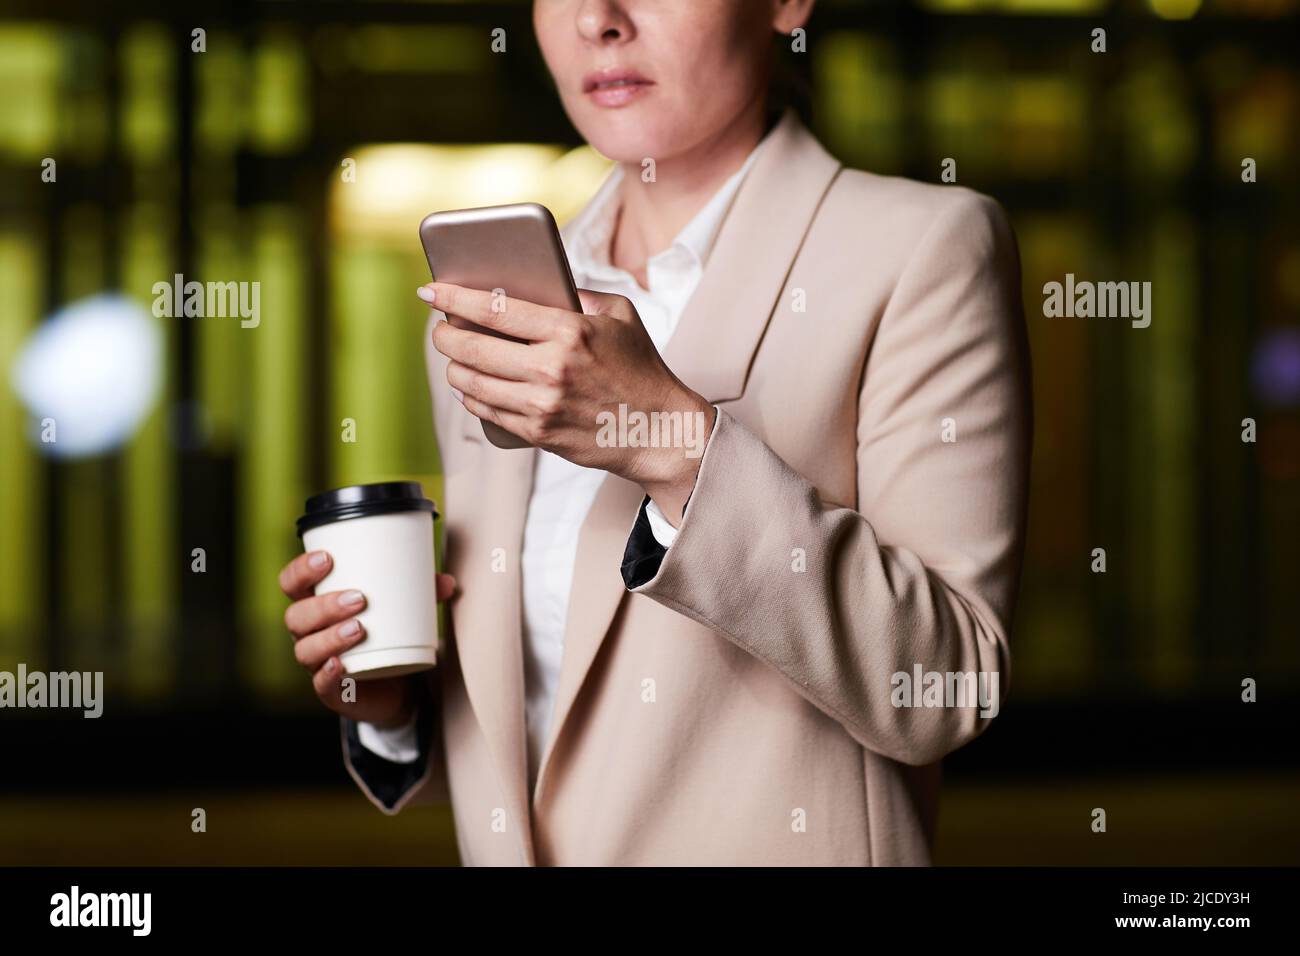 Nahaufnahme einer durchdachten Geschäftsfrau in stilvoller Jacke, die im dunklen Büro steht und Kaffee trinkt, während sie die Planner-App auf dem Smartphone überprüft Stockfoto